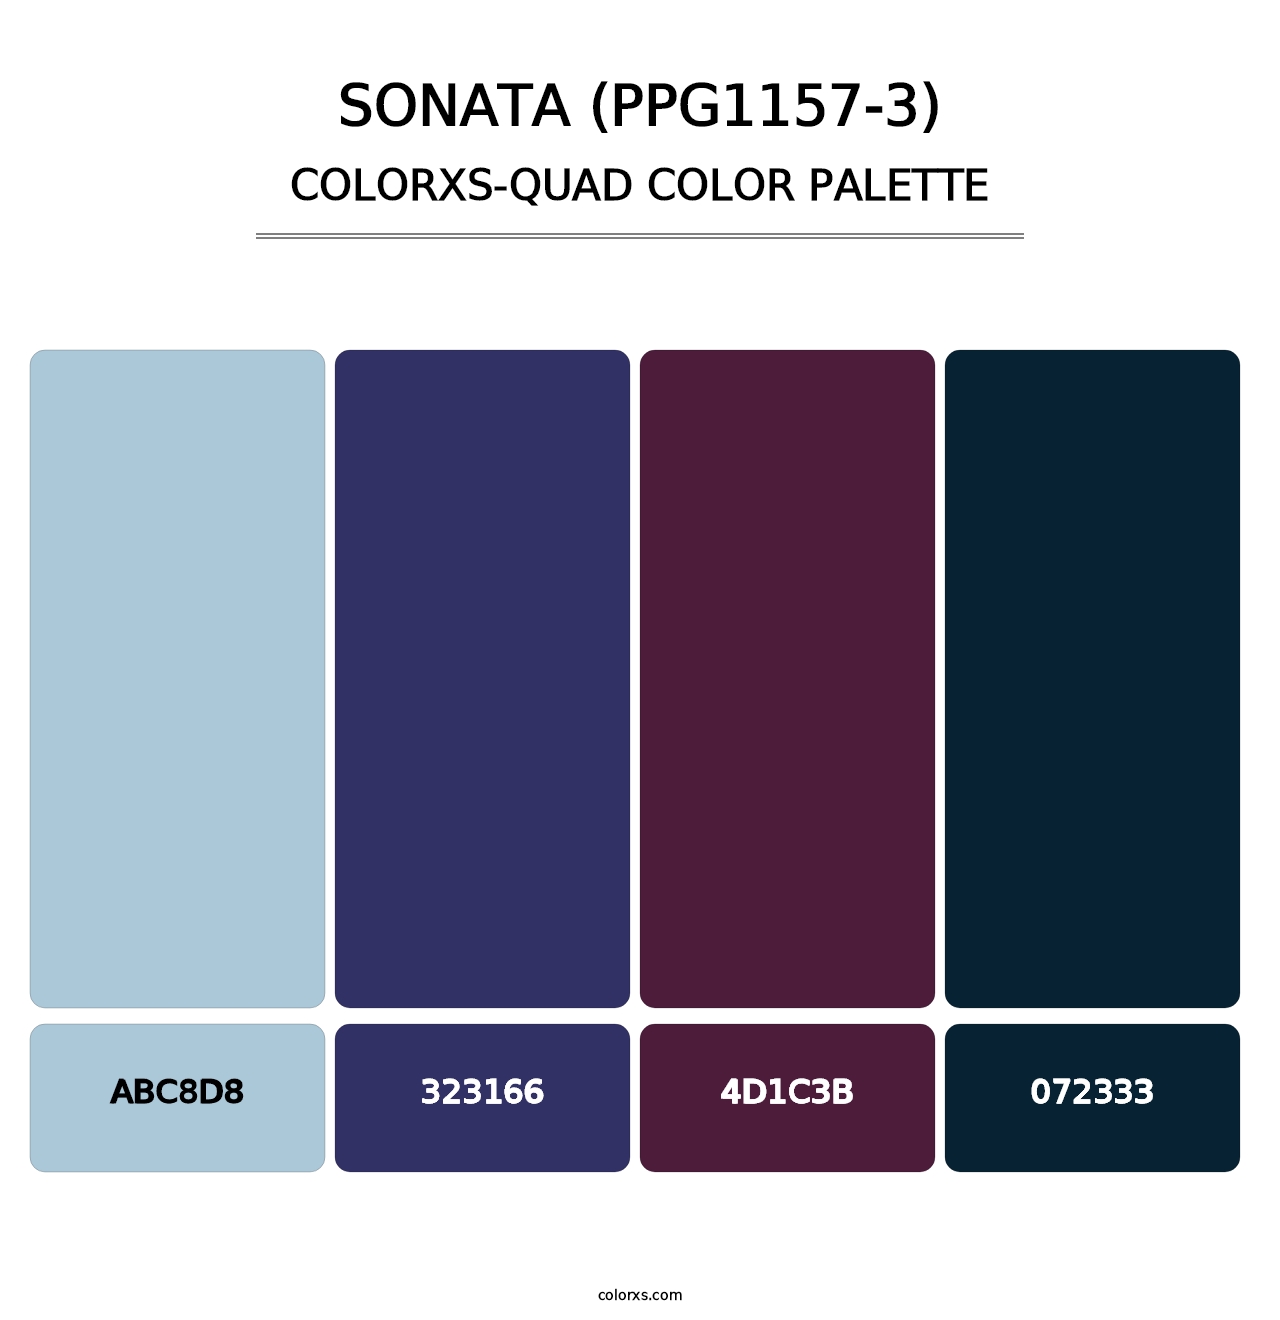 Sonata (PPG1157-3) - Colorxs Quad Palette